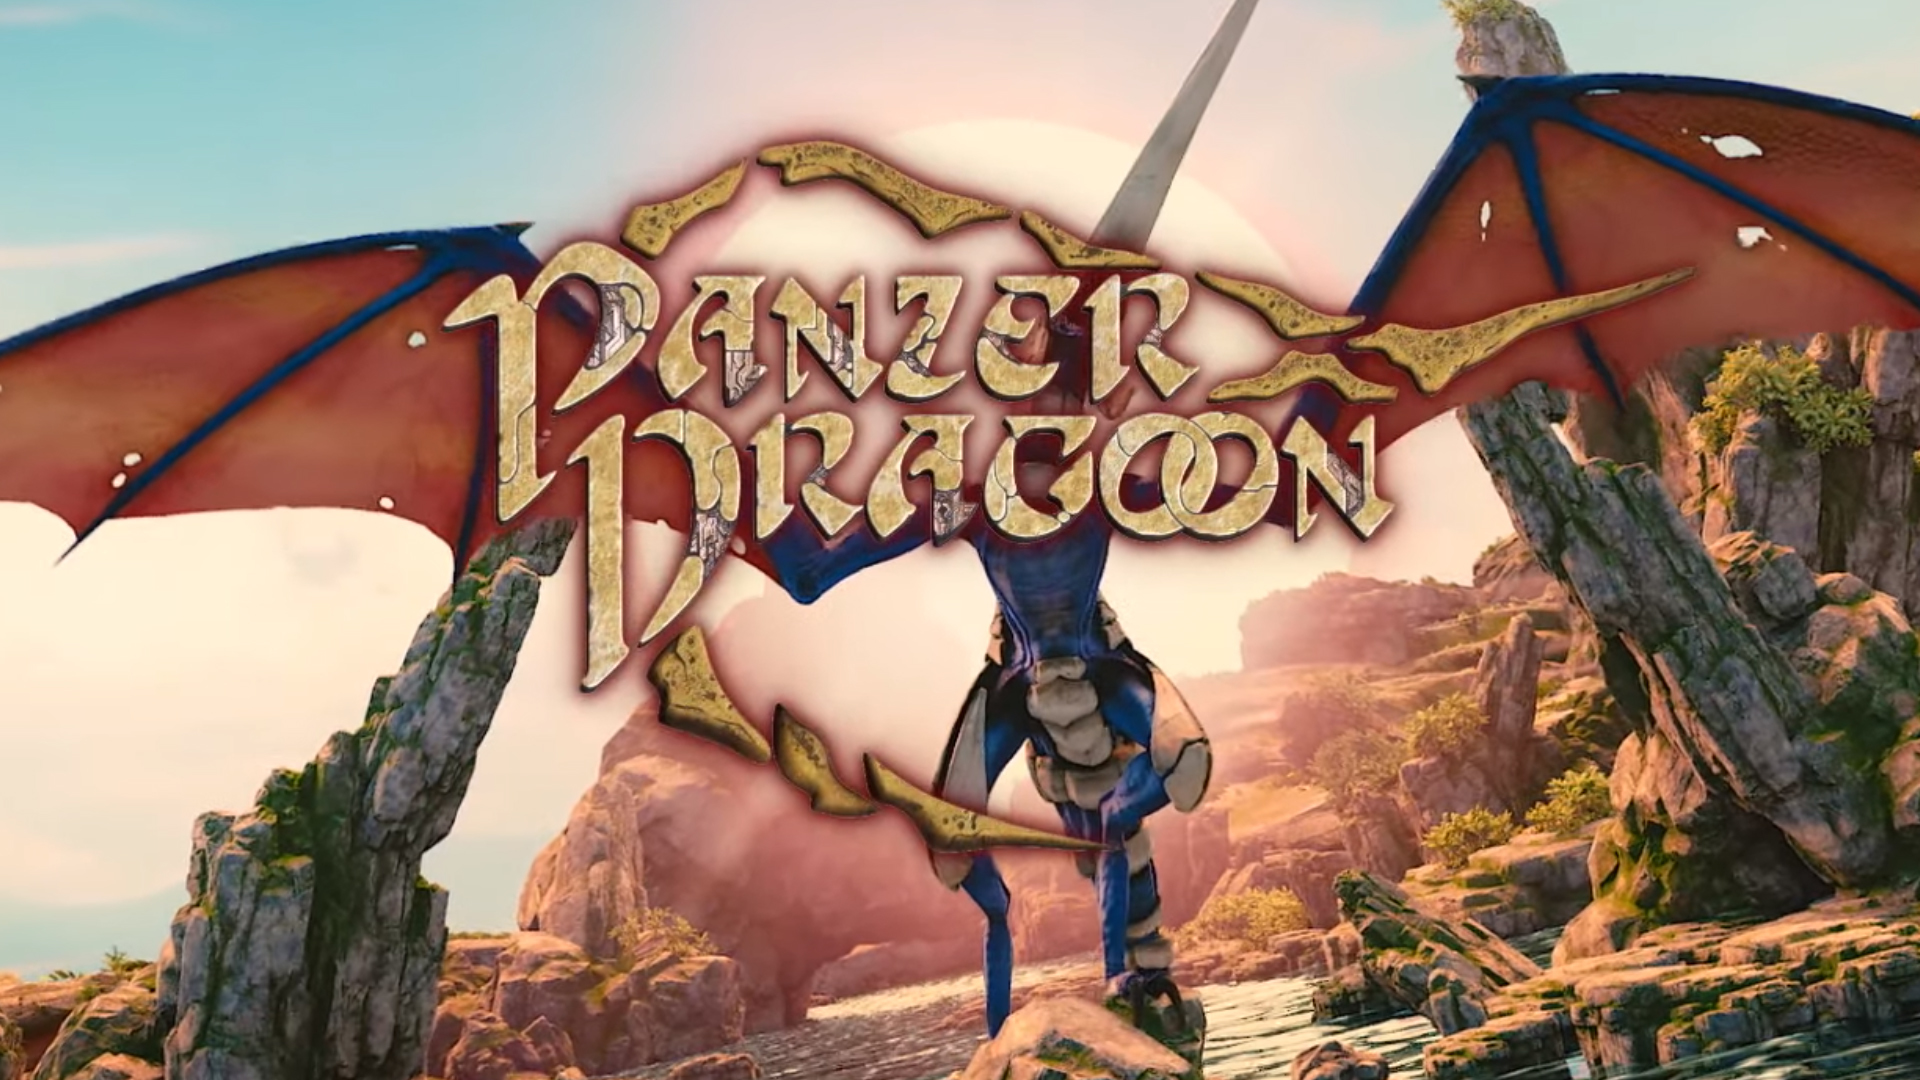 download panzer dragoon zwei remake